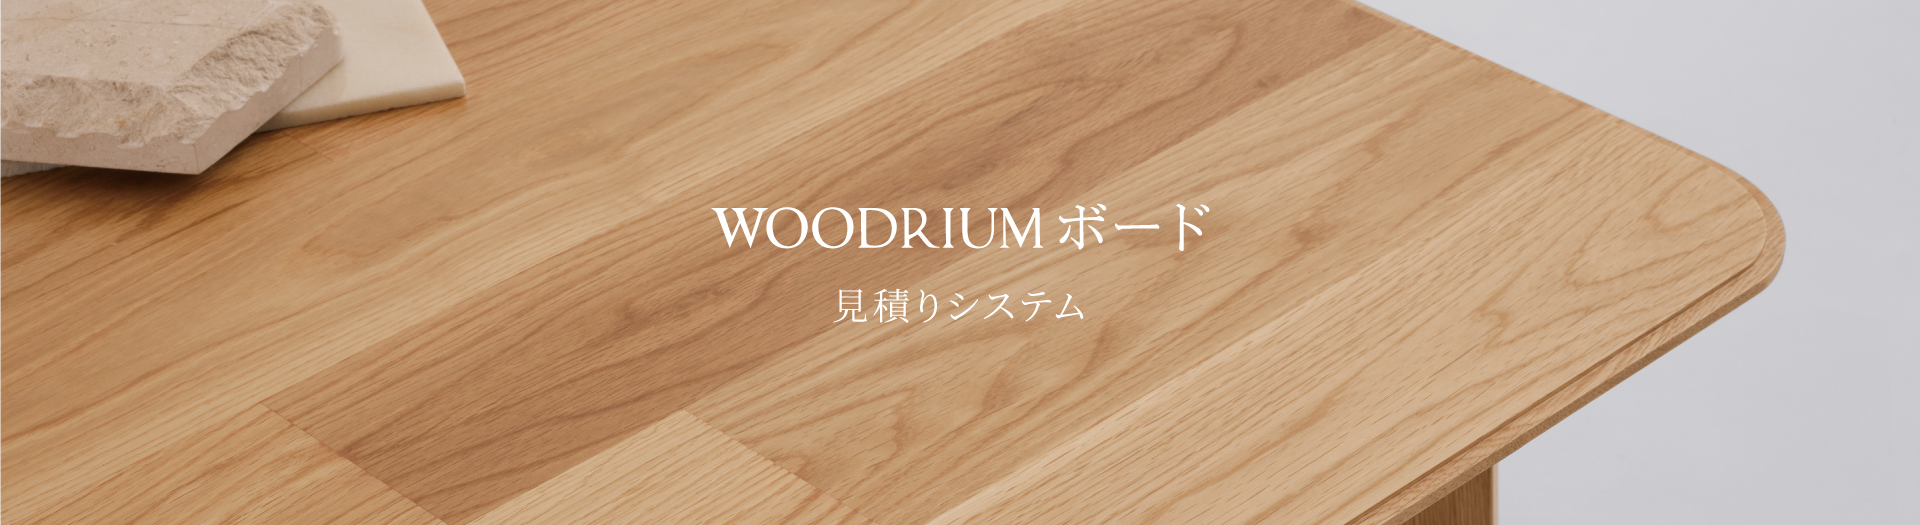 WOODRIUMボード 見積システム